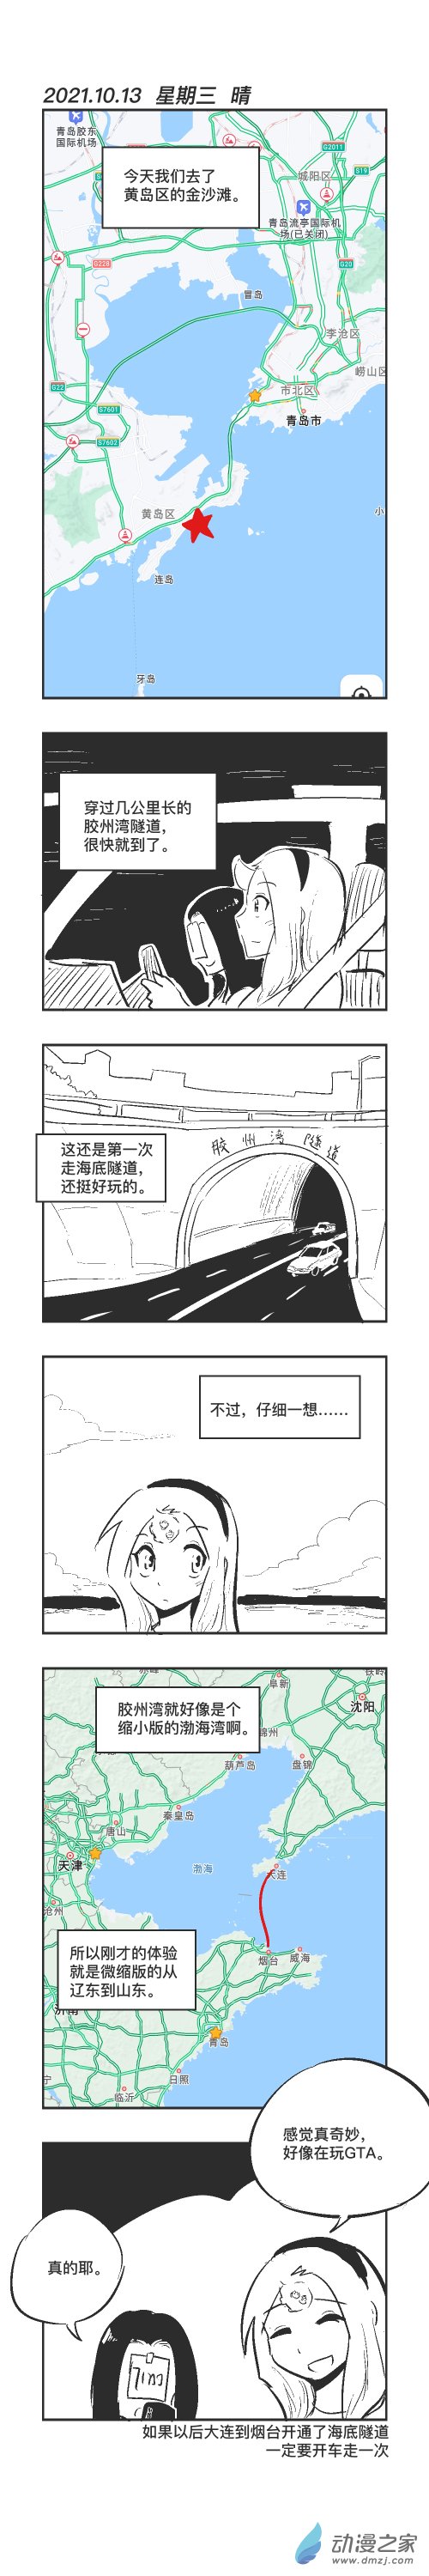 烏賊ichabod日更計劃 - 0113 海底隧道 - 1